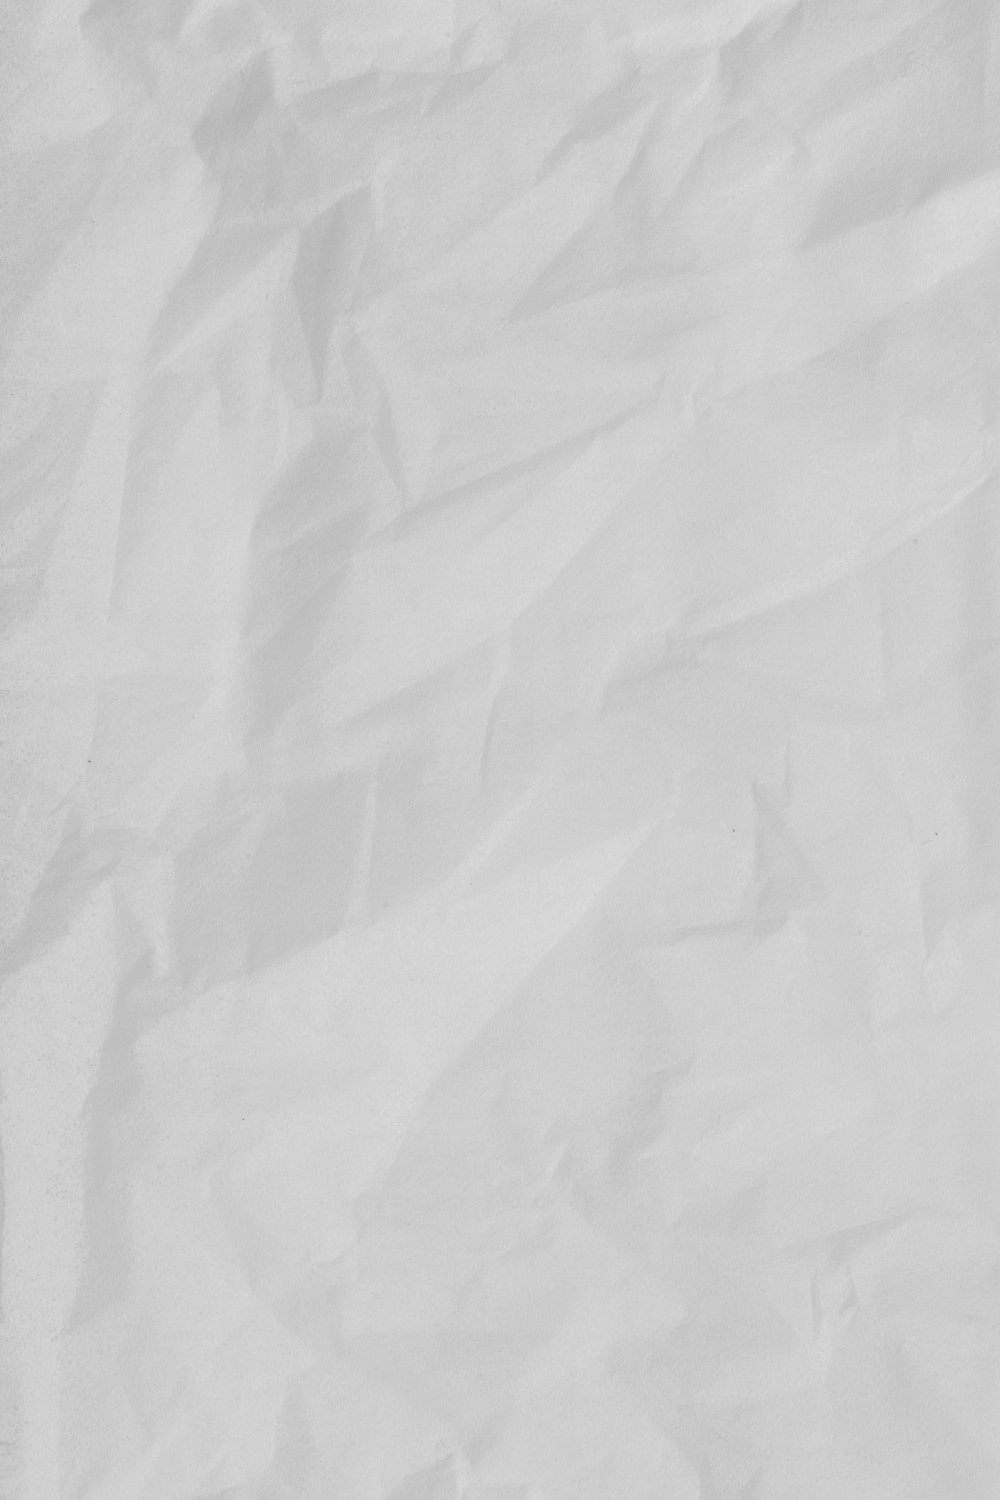 tecido branco na mesa de madeira marrom